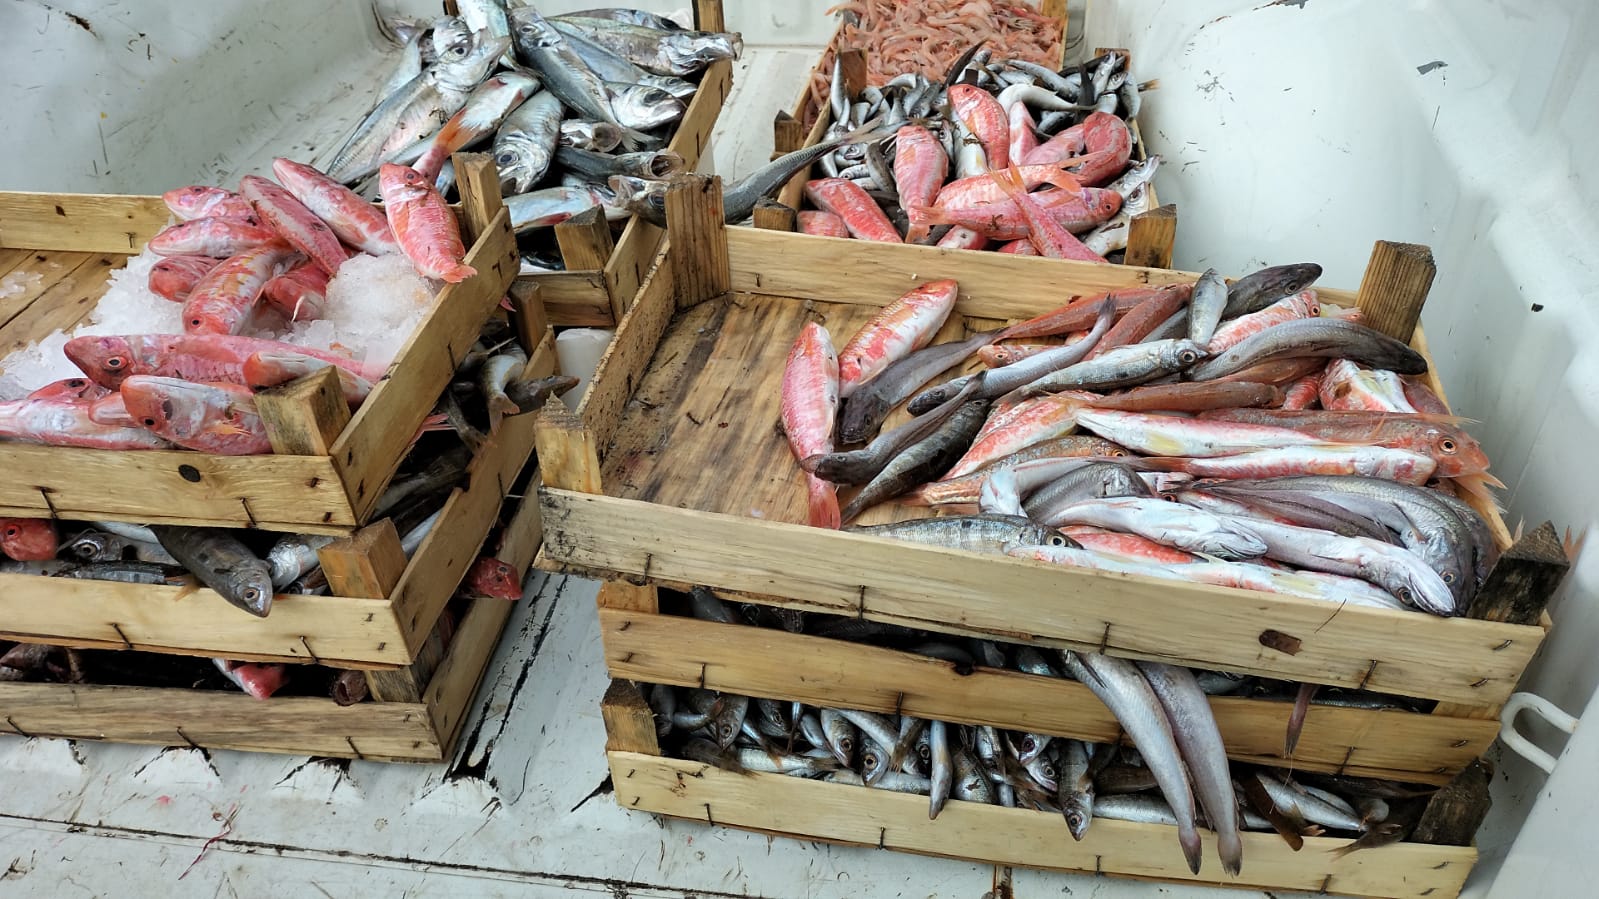 Prodotti ittici senza tracciabilità, sequestrati oltre 55 chili di pesce: nei guai il responsabile